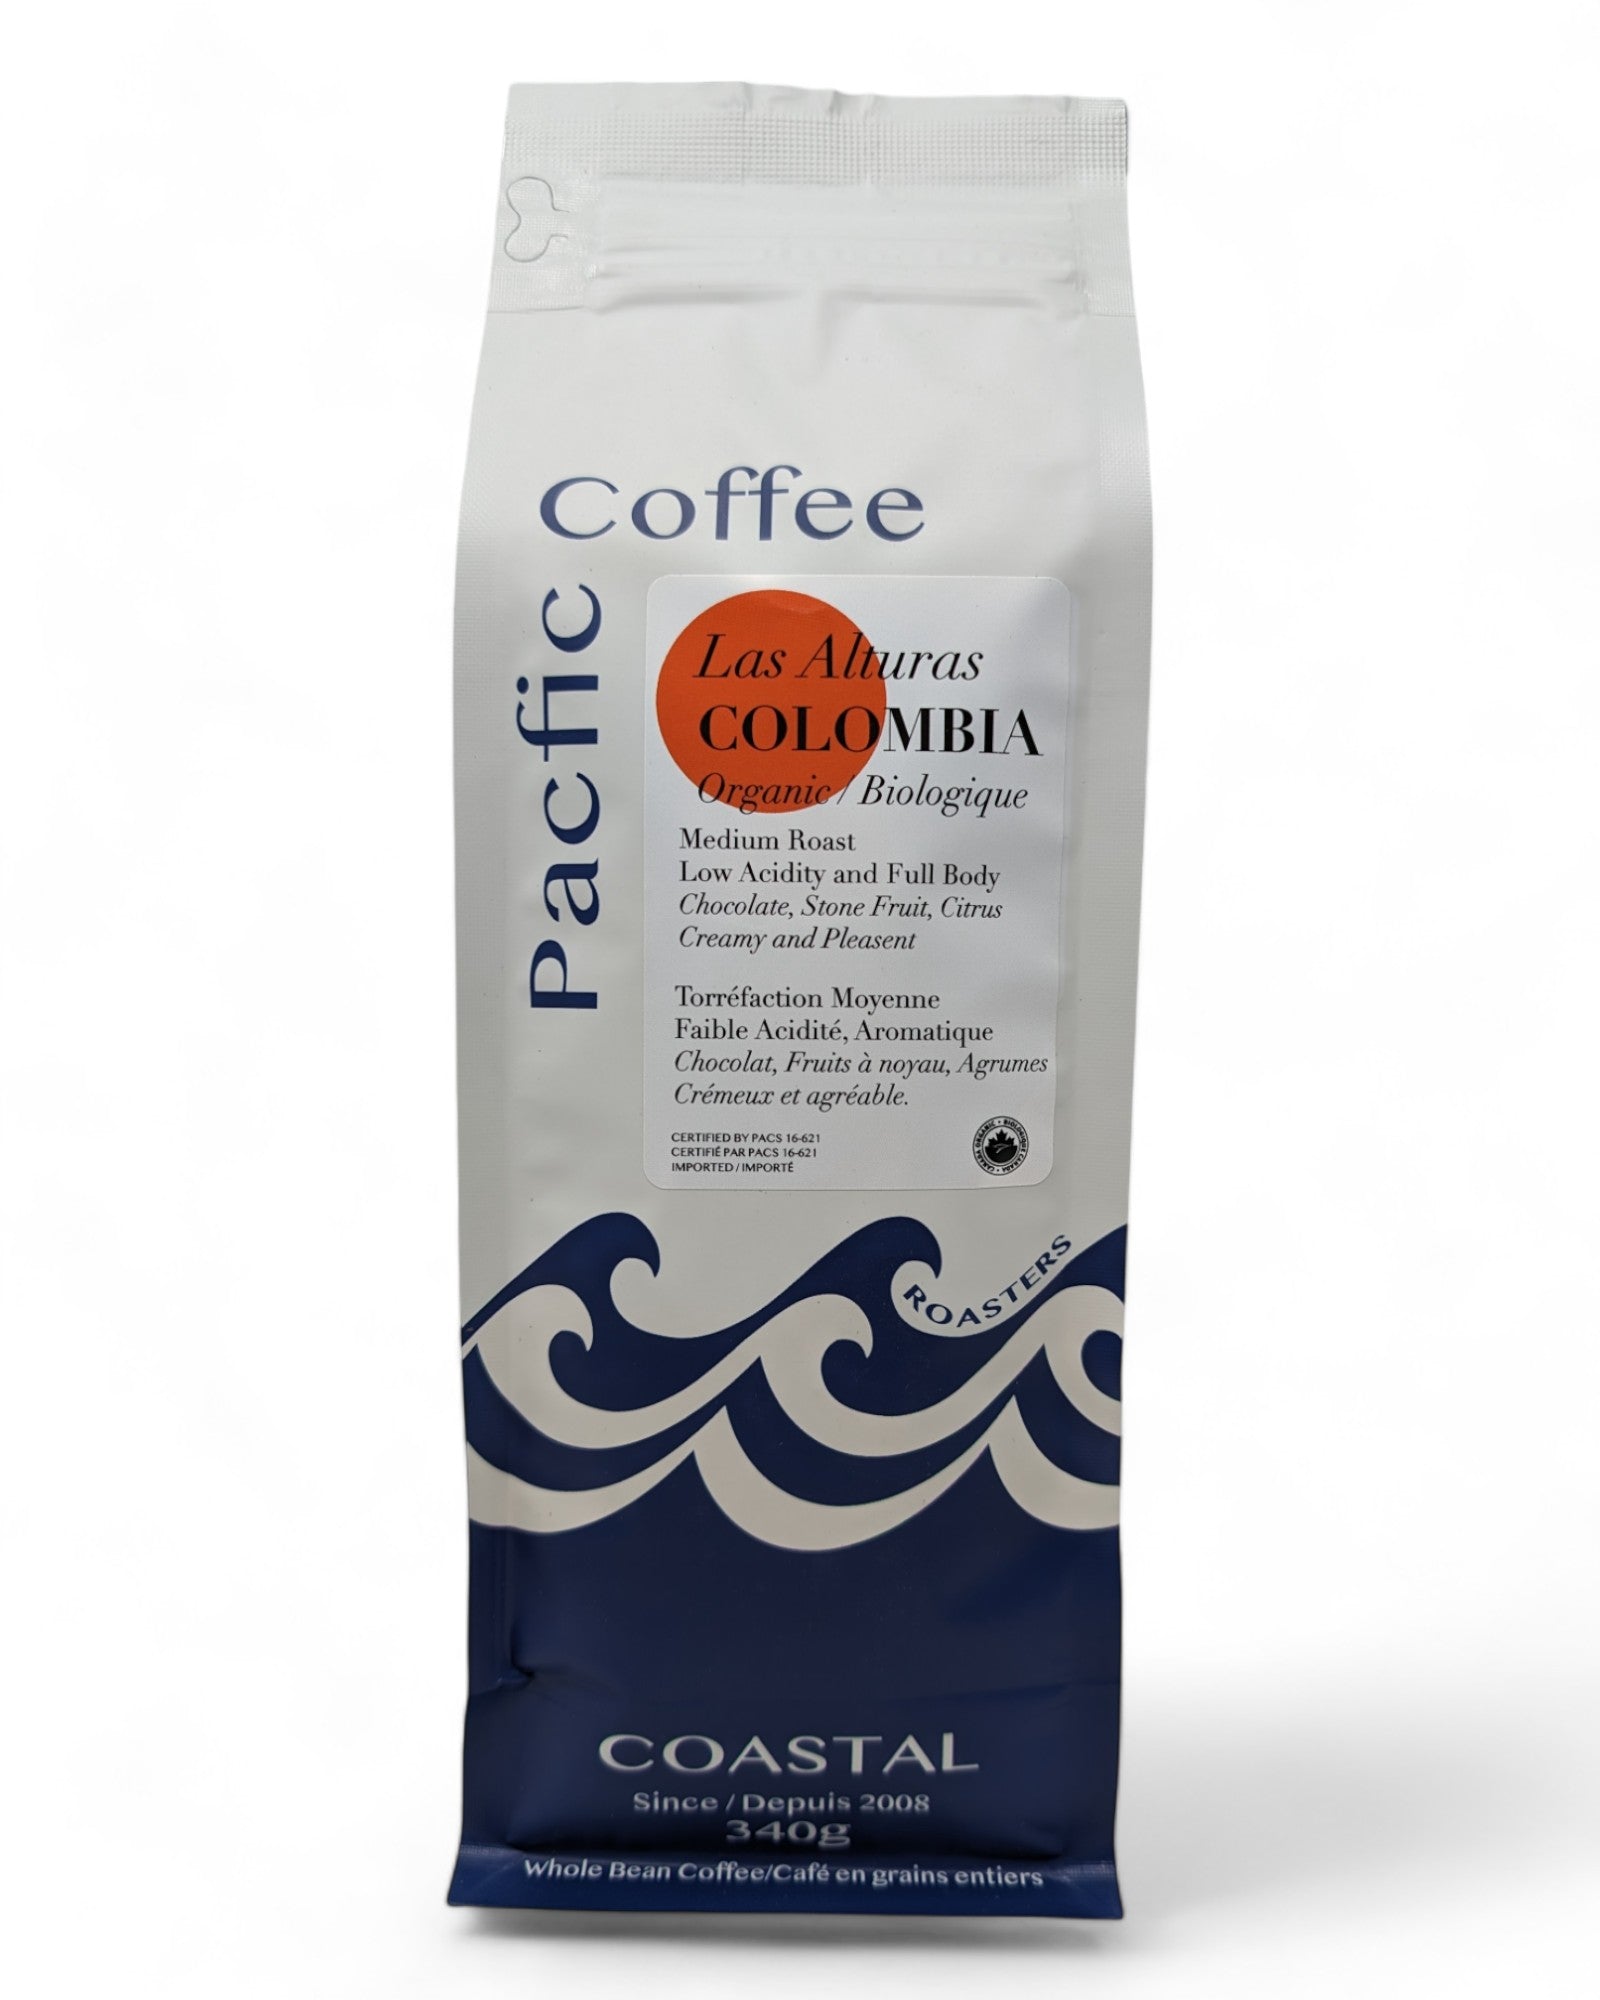 Las Alturas Colombia Organic Coffee